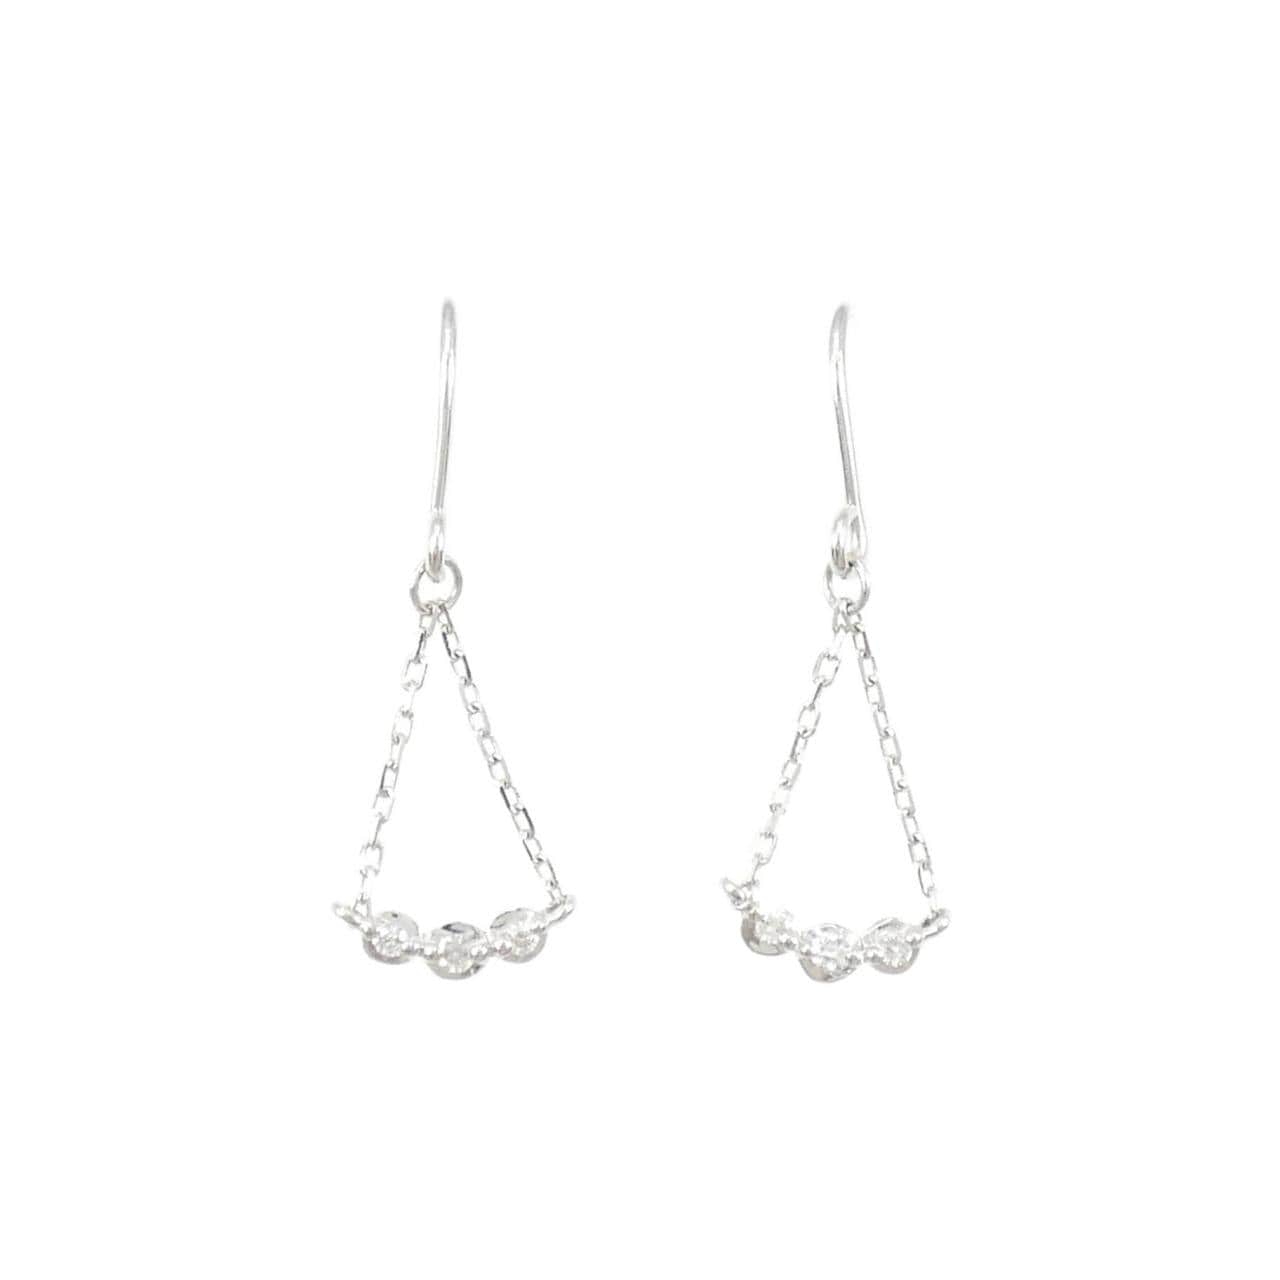 4゜C Diamond earrings